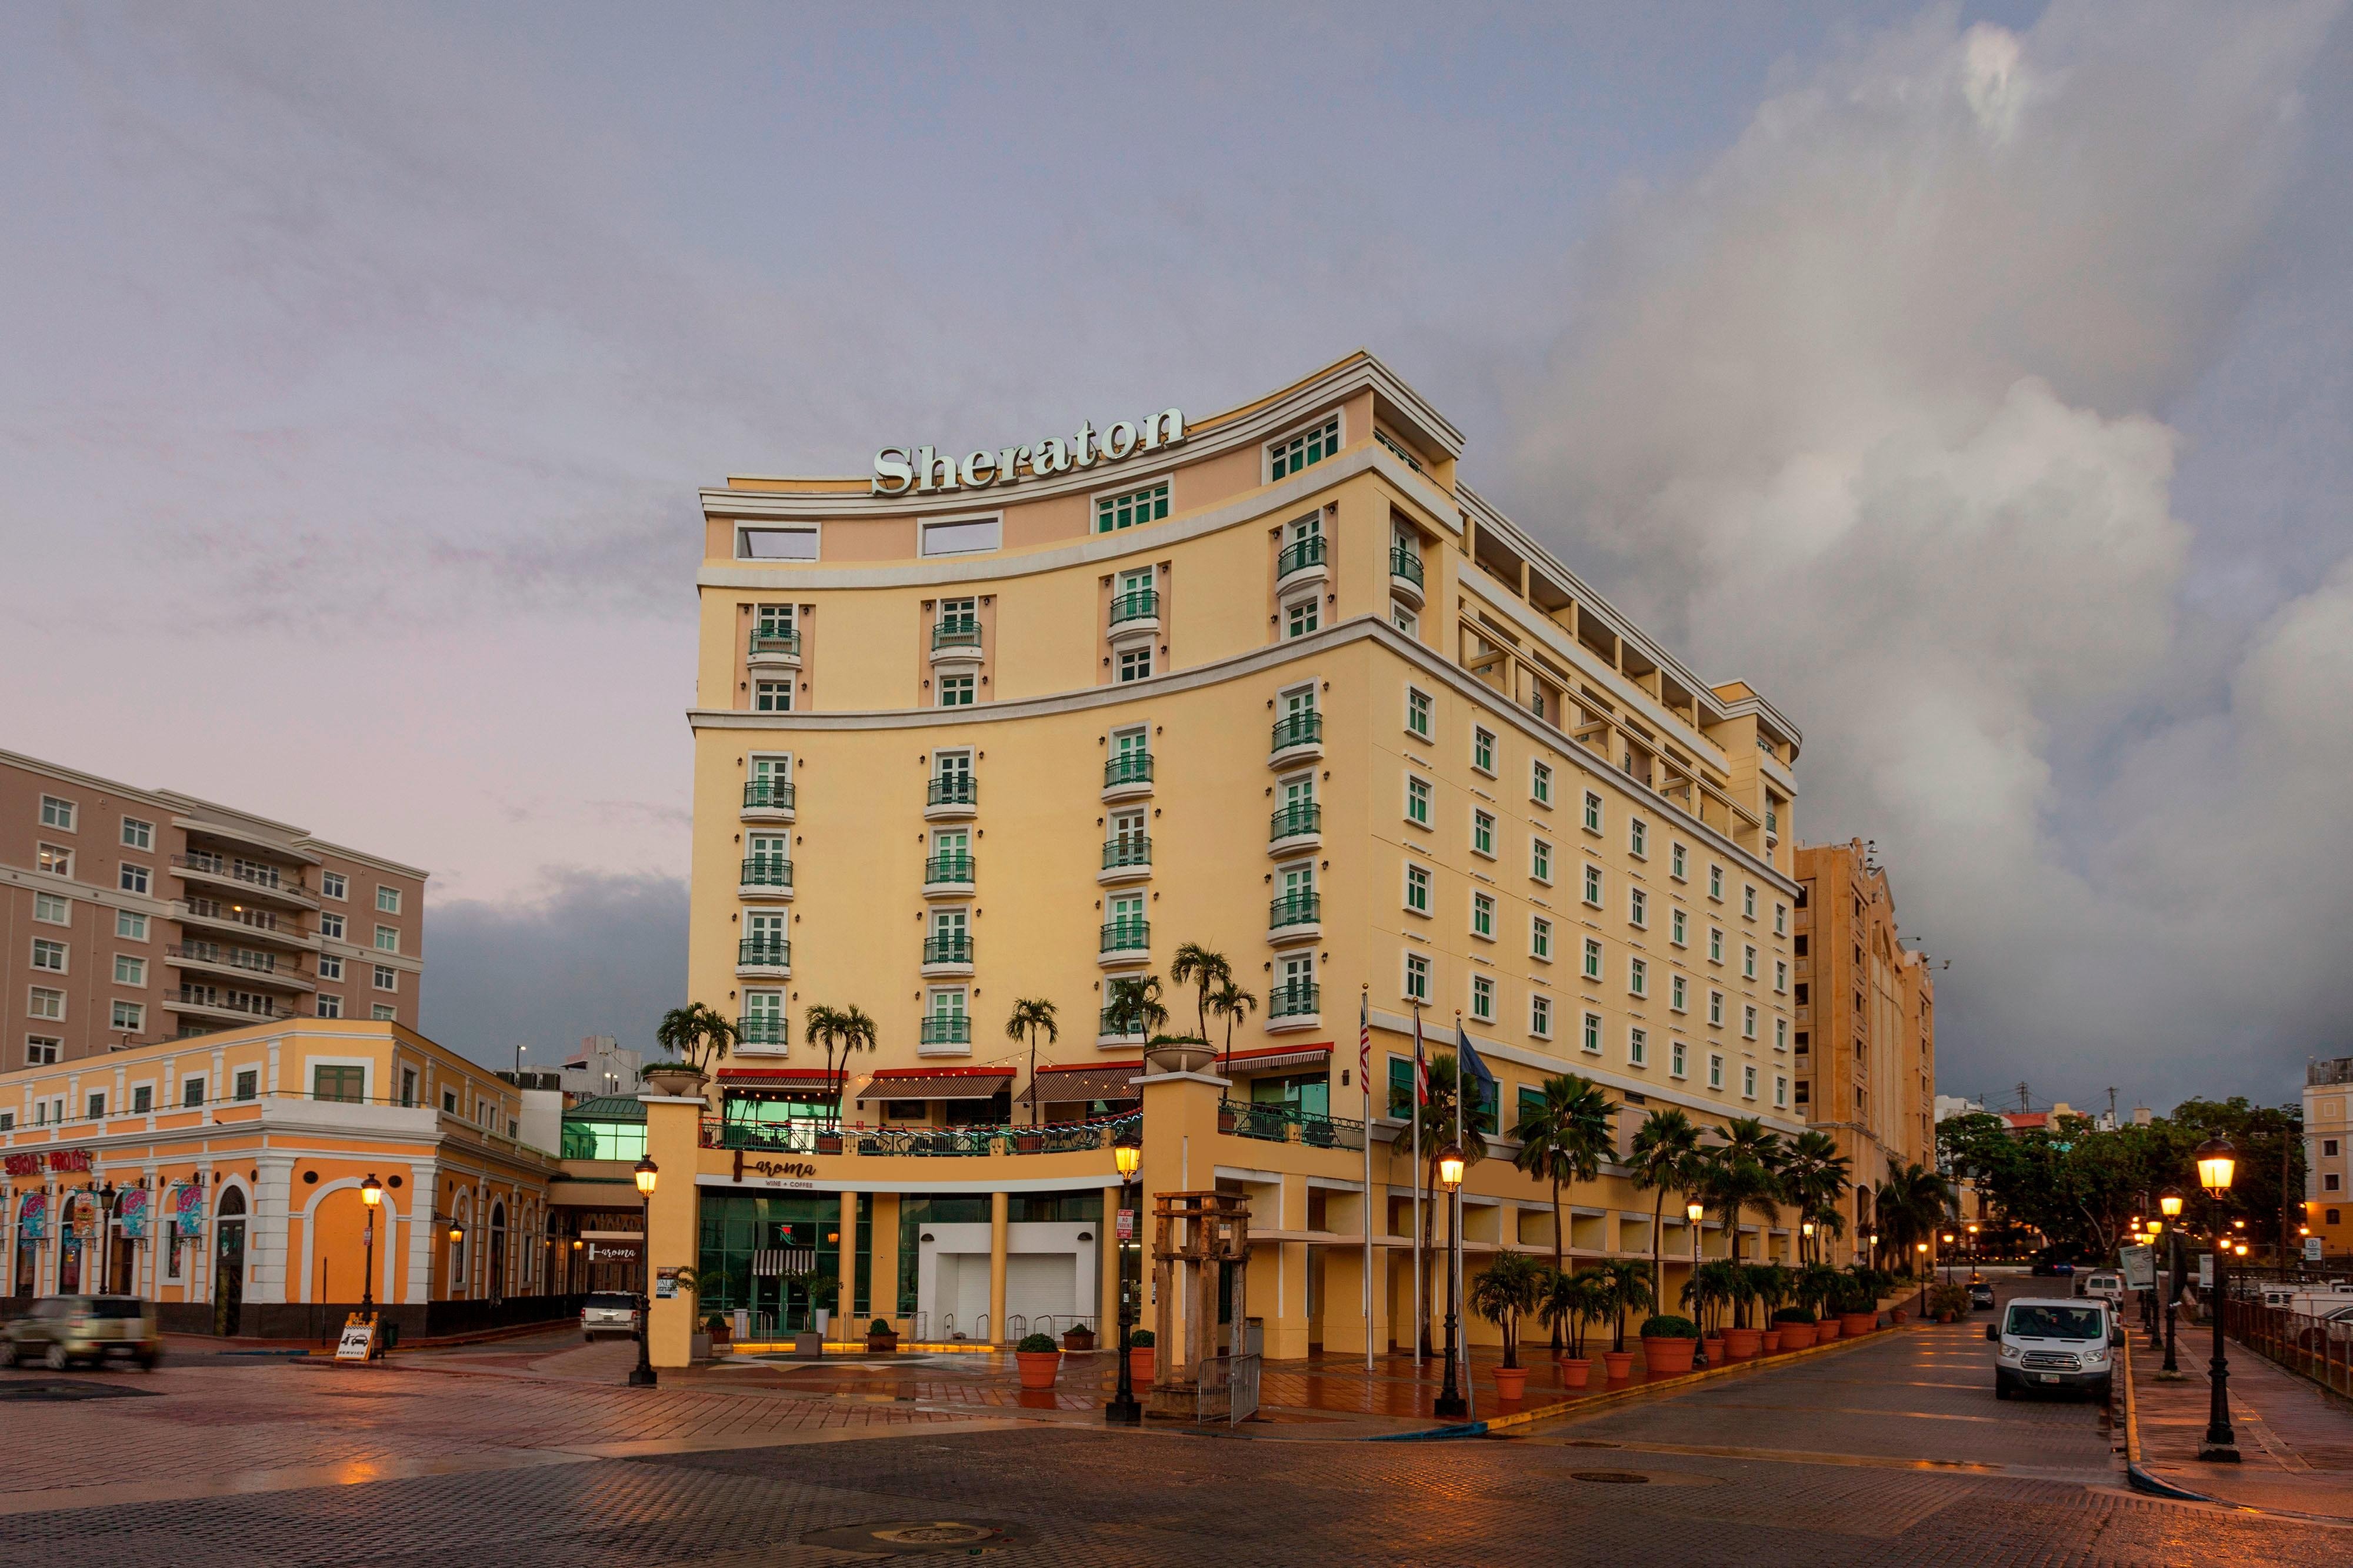 Sheraton Old San Juan Hotel Meetings and Events- First Class San Juan